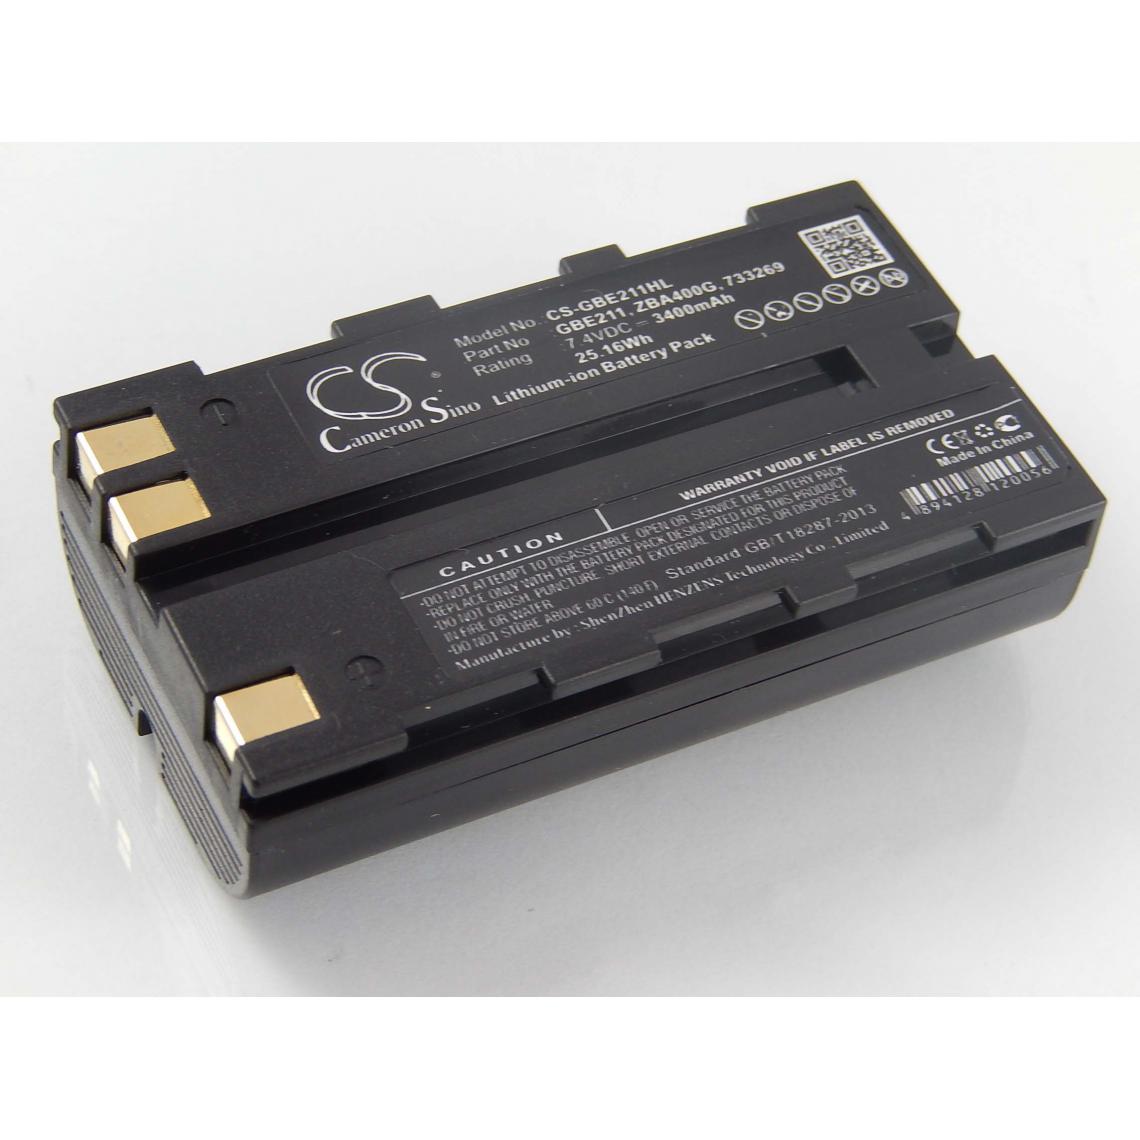 Vhbw - vhbw Batterie compatible avec Leica Builder 500 dispositif de mesure laser, outil de mesure (3400mAh, 7,4V, Li-ion) - Piles rechargeables